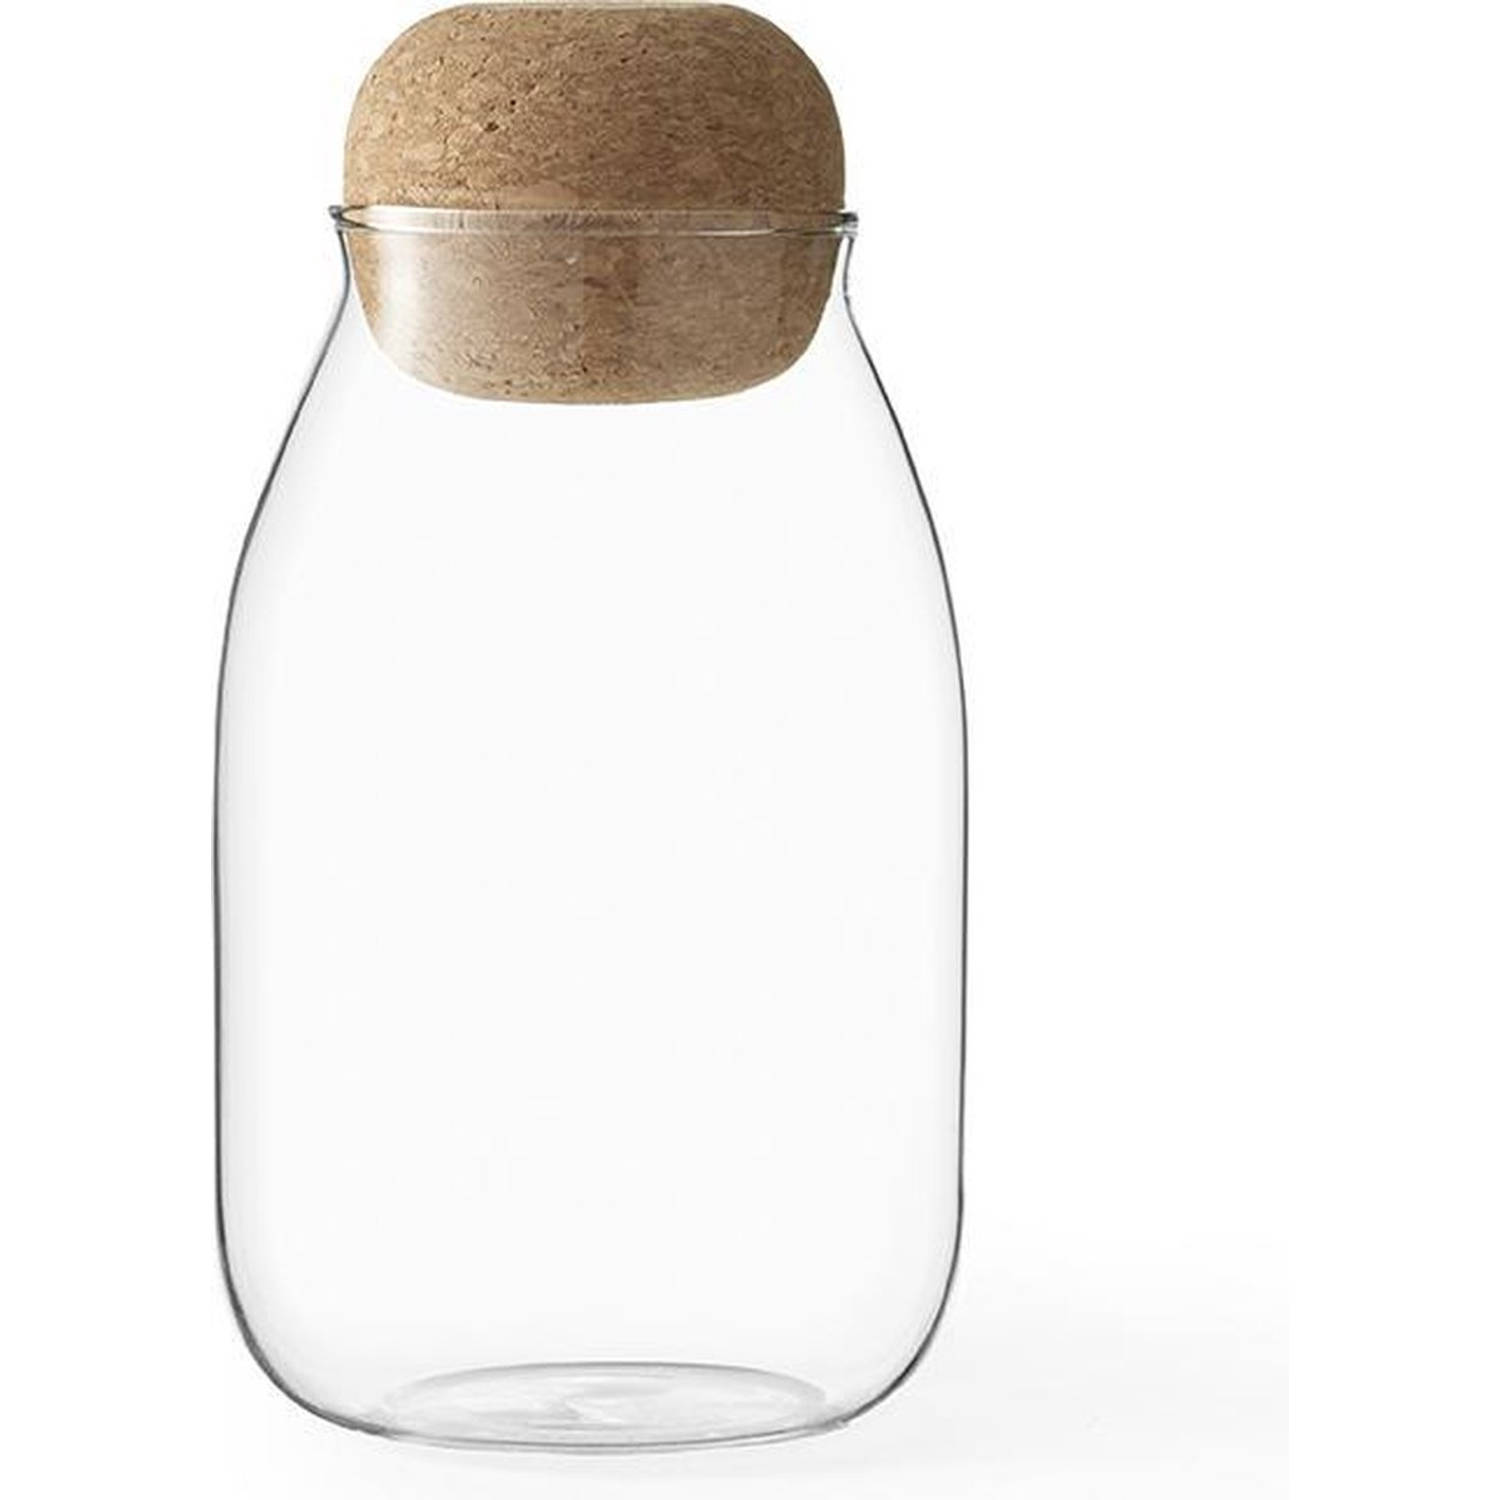 Viva - Viva Cortica Voorraadpot Glass and Cork Medium 0,5 liter